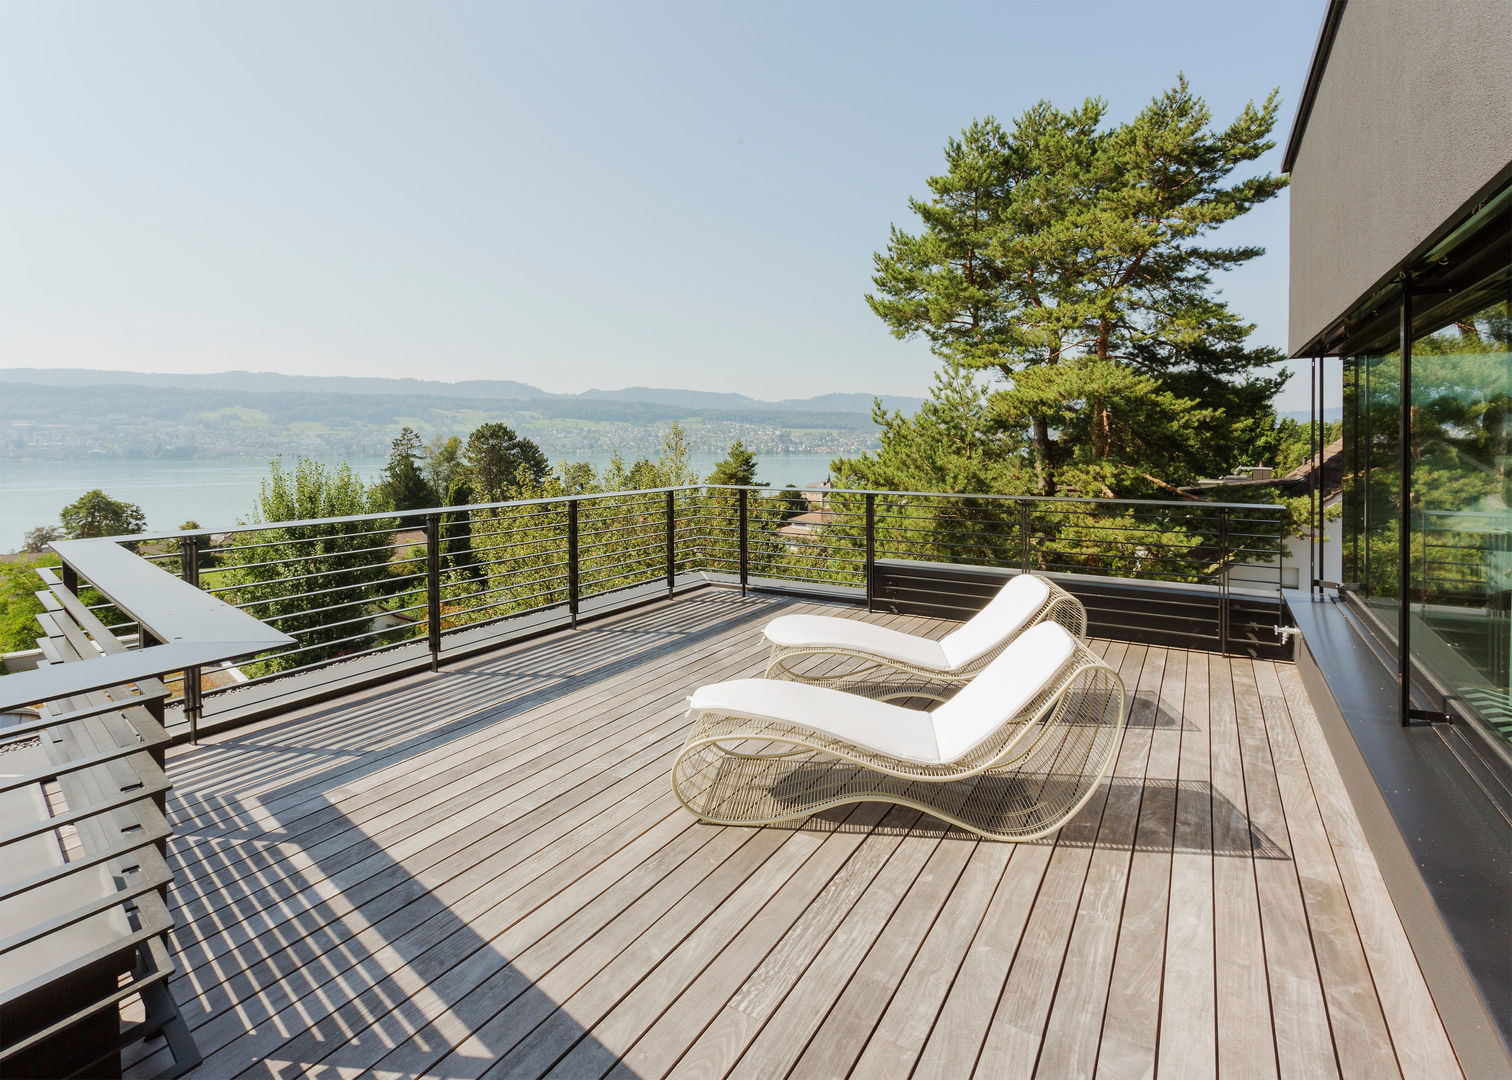 Objekt 336 / meier architekten meier architekten zürich Moderner Balkon, Veranda & Terrasse Holz Holznachbildung lounge,holzboden,terrasse,sicht,lounge chair